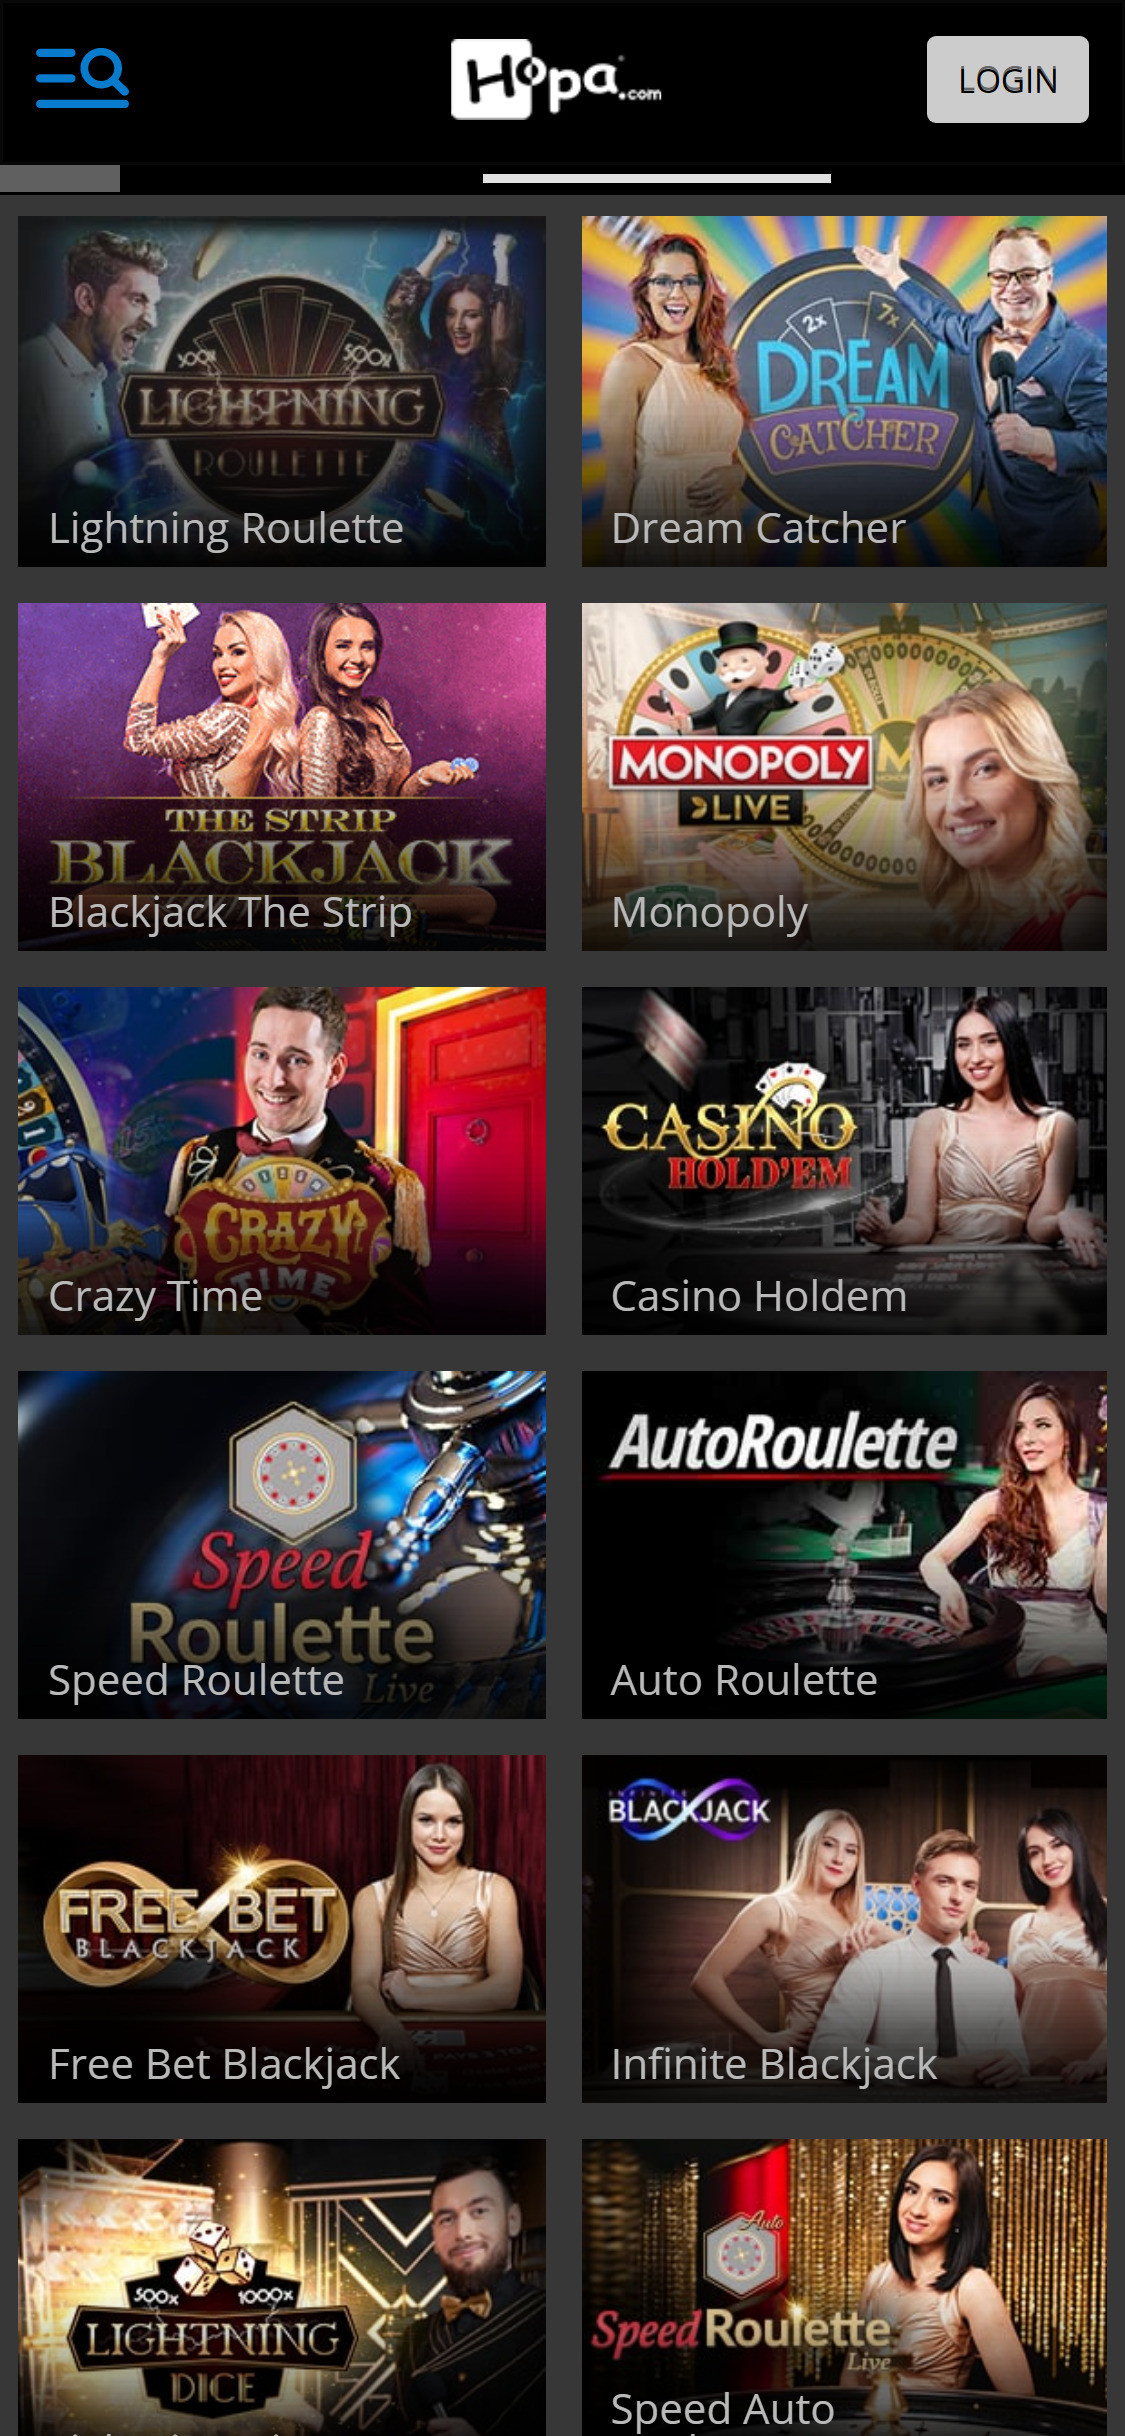 Hopa Casino Mobile Live Dealer Games Review